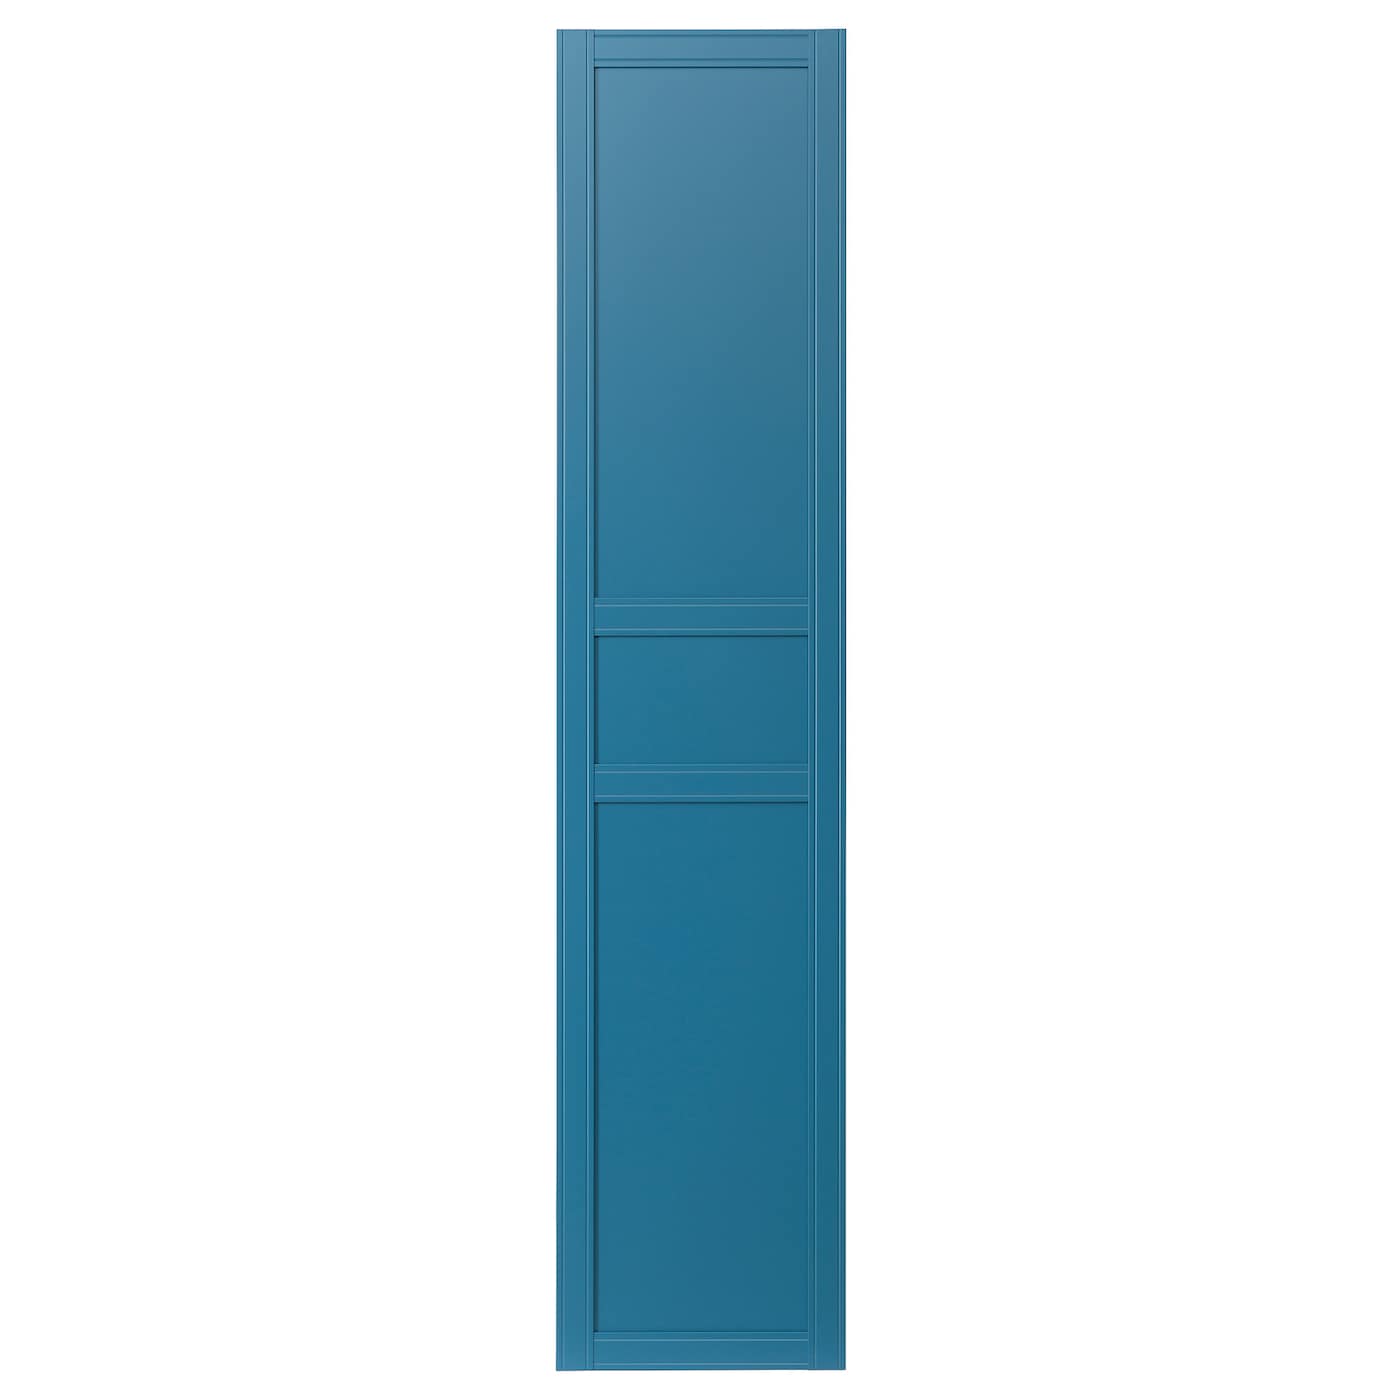 Дверь с петлями - IKEA FLISBERGET/ФЛИСБЕРГЕТ ИКЕА, 230х50 см, синий